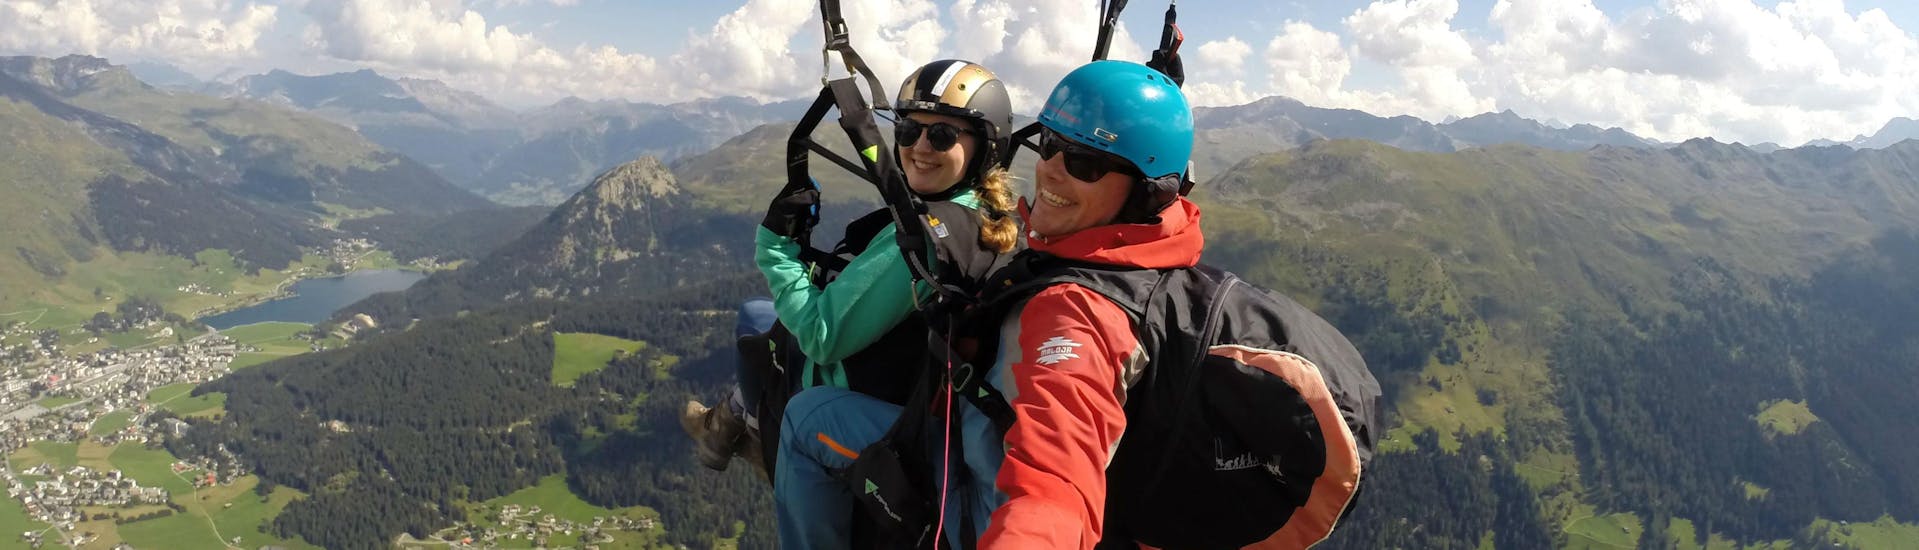 Volo panoramico in parapendio biposto a Davos (da 12 anni) - Jakobshorn.